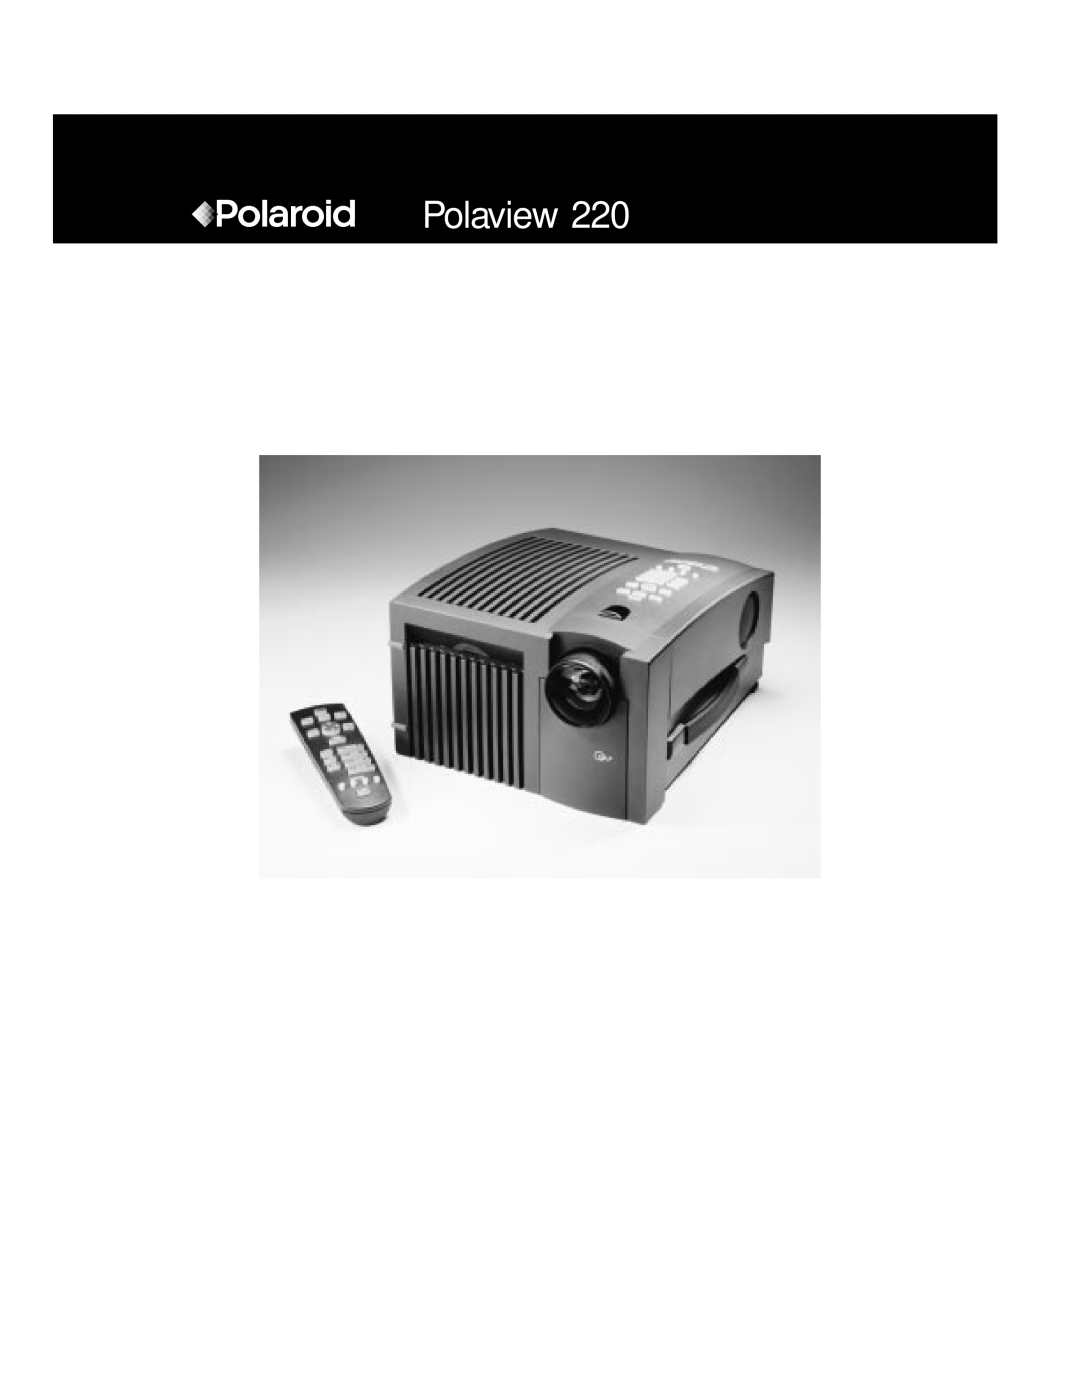 Polaroid Polaview 220 manual 